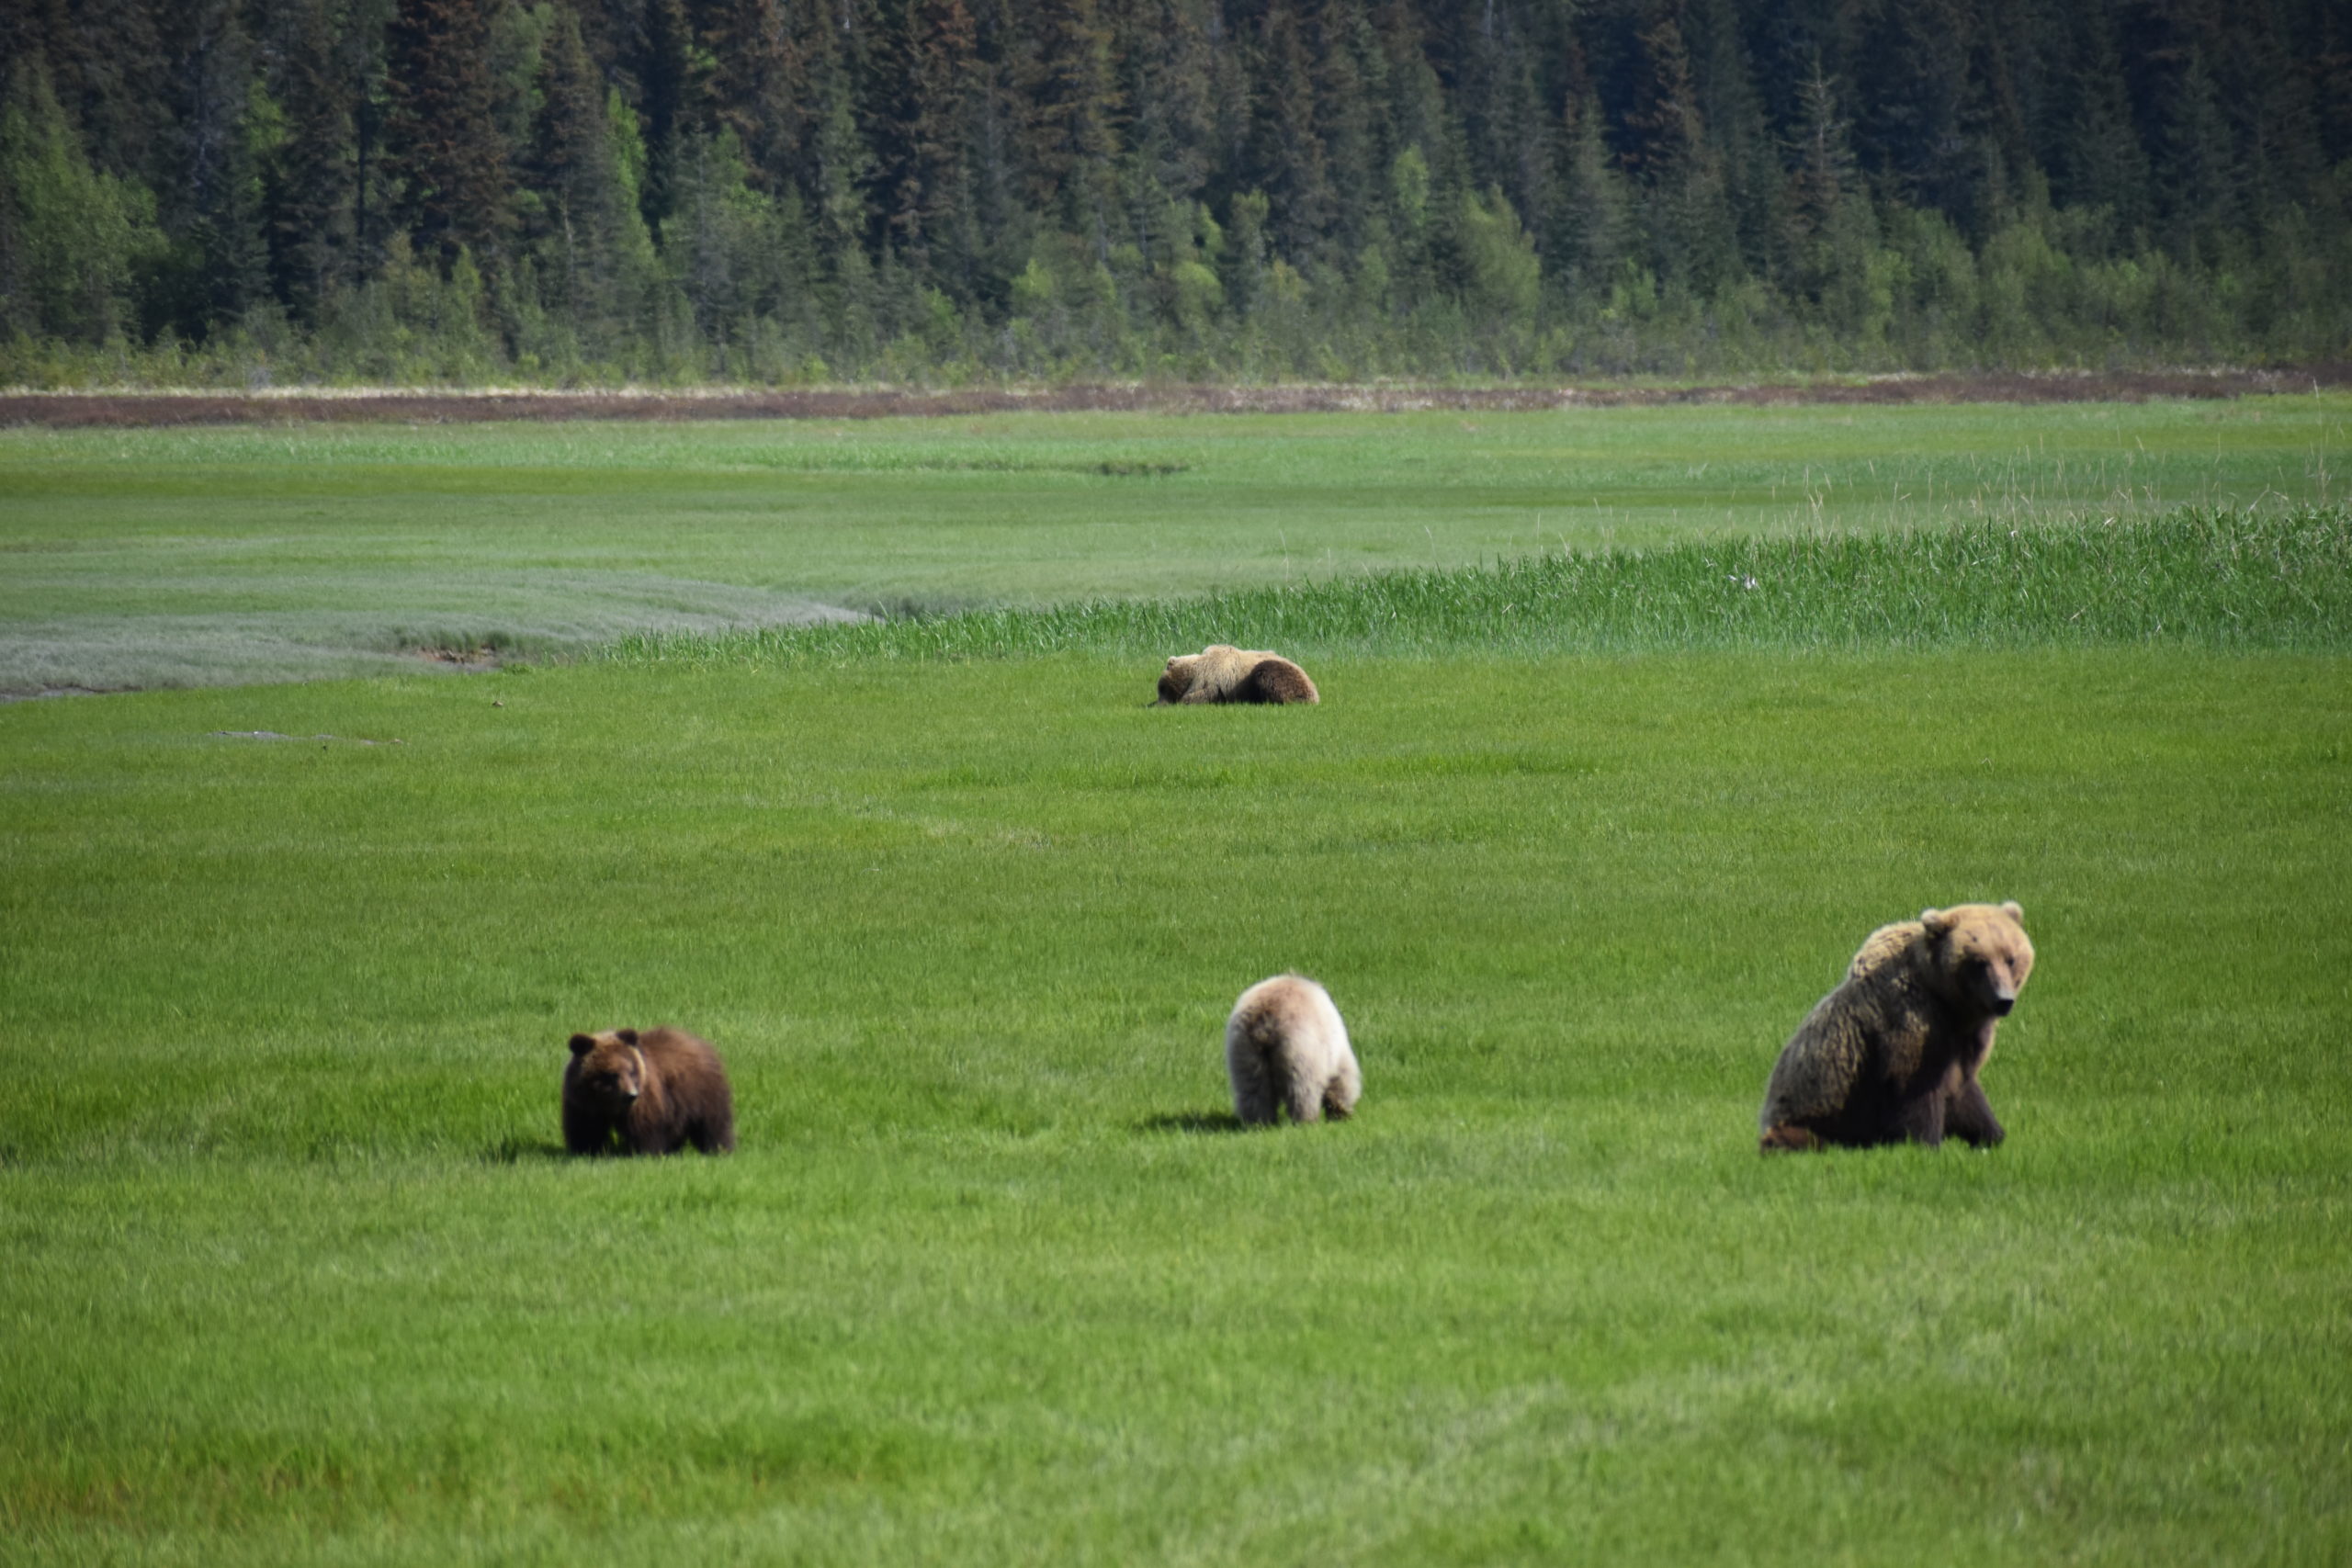 Bears feeding in a field in Alaska